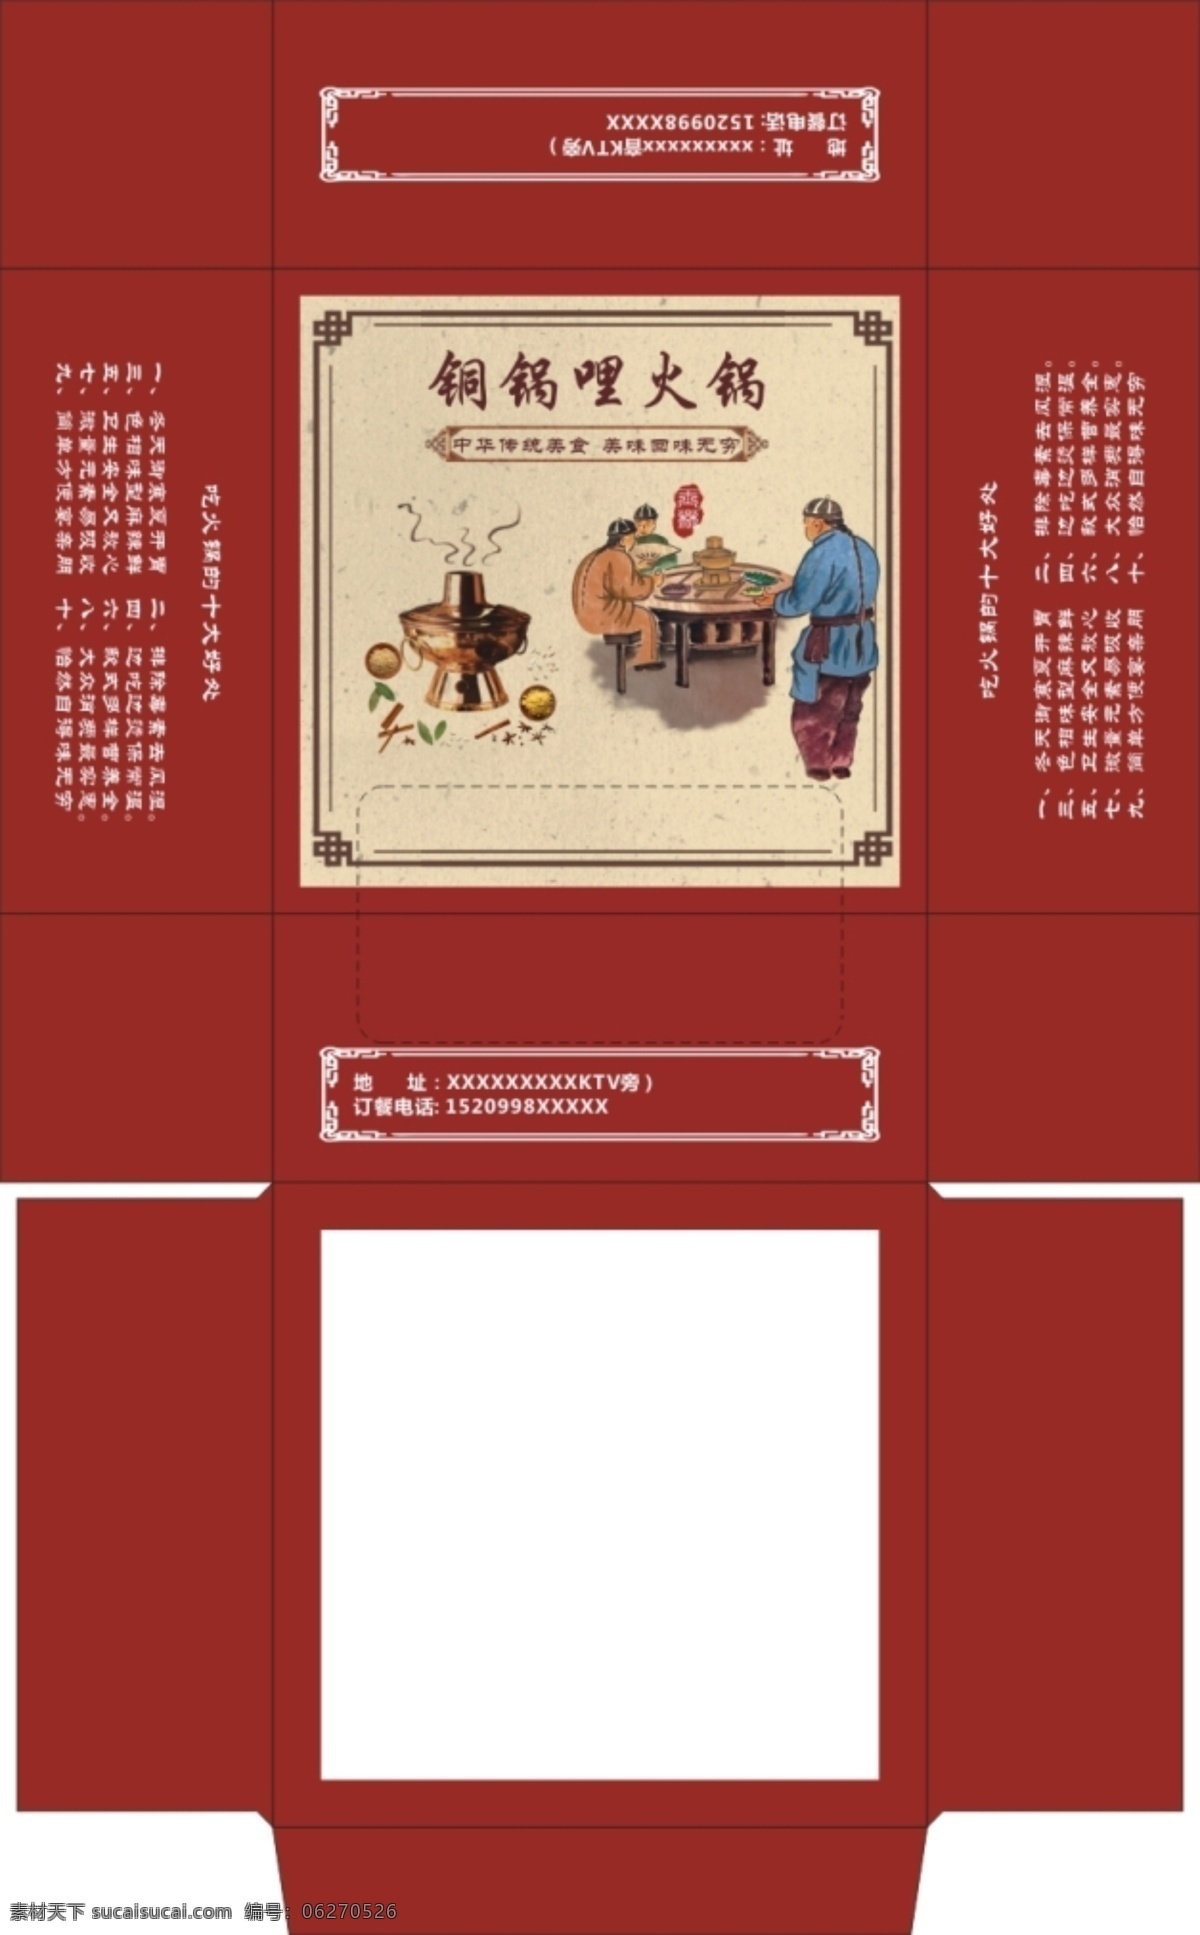 铜 火锅 纸巾 盒 包装 铜火锅 纸巾盒 包装平面图 传统火锅 盒子